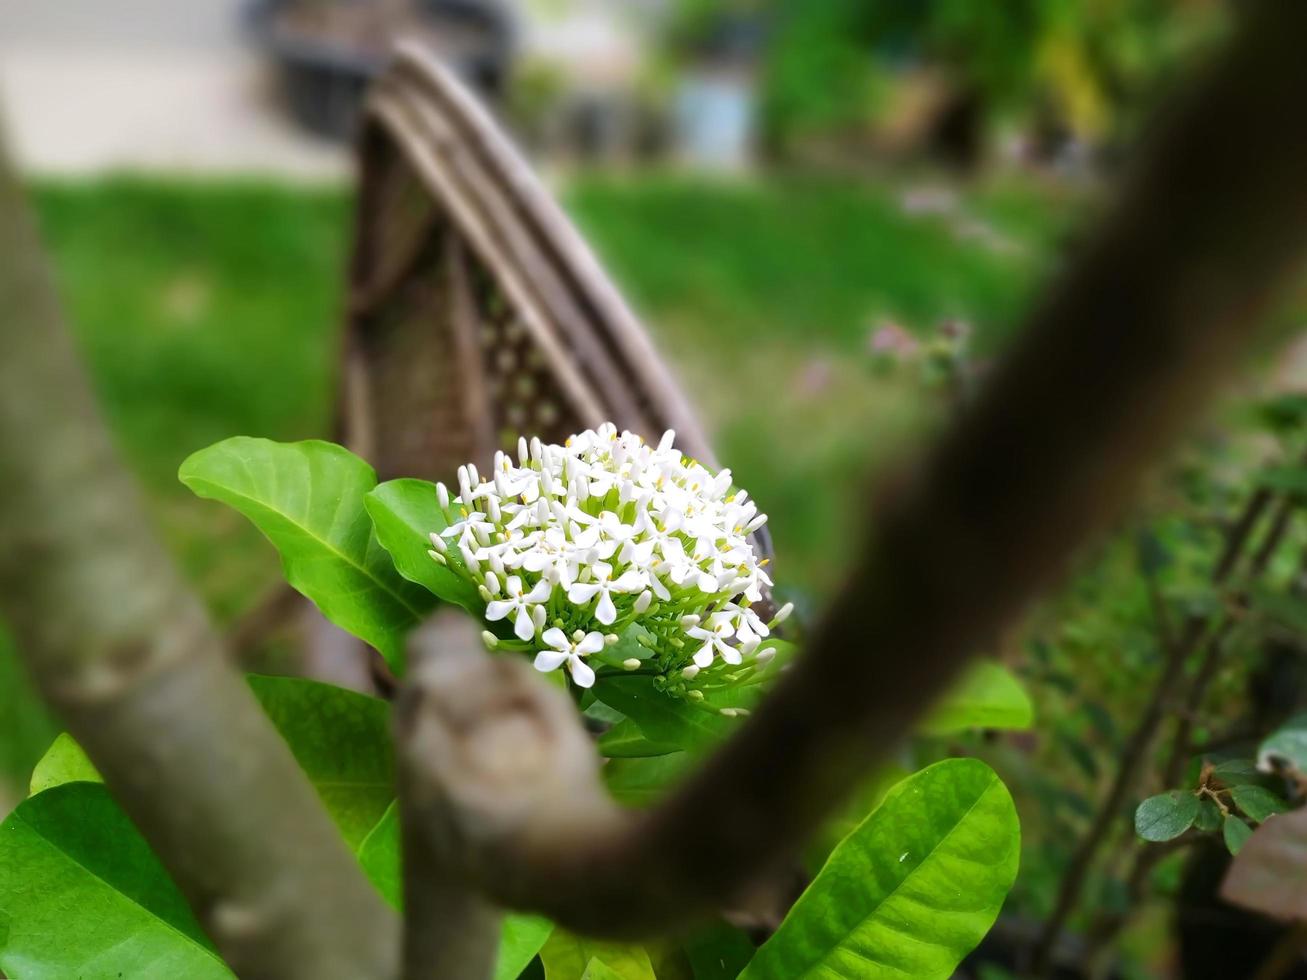 ixora blanca siamesa que florece en el jardín. flores blancas fragantes. foto